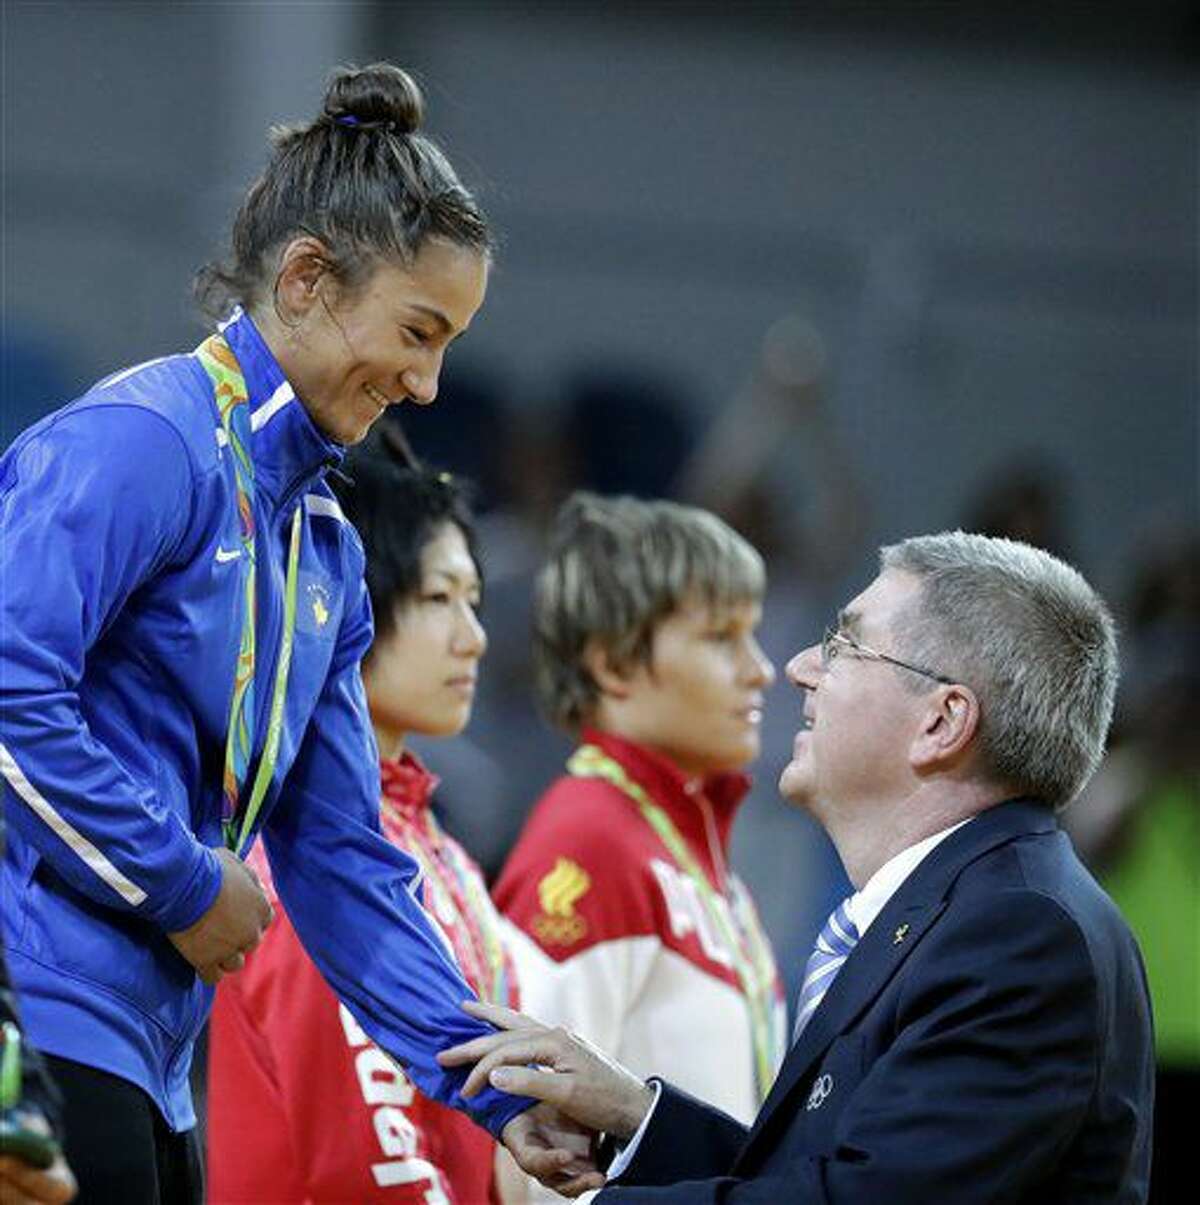 La judoca Majlinda Kelmendi, de Kosovo, dialoga con el presidente del COI, Thomas Bach, tras recibir la medalla de oro en la competencia de -52 kilogramos en los Juegos Olímpicos de Río de Janeiro, Brasil, el domingo 7 de agosto de 2016. (AP Foto/Charlie Riedel)